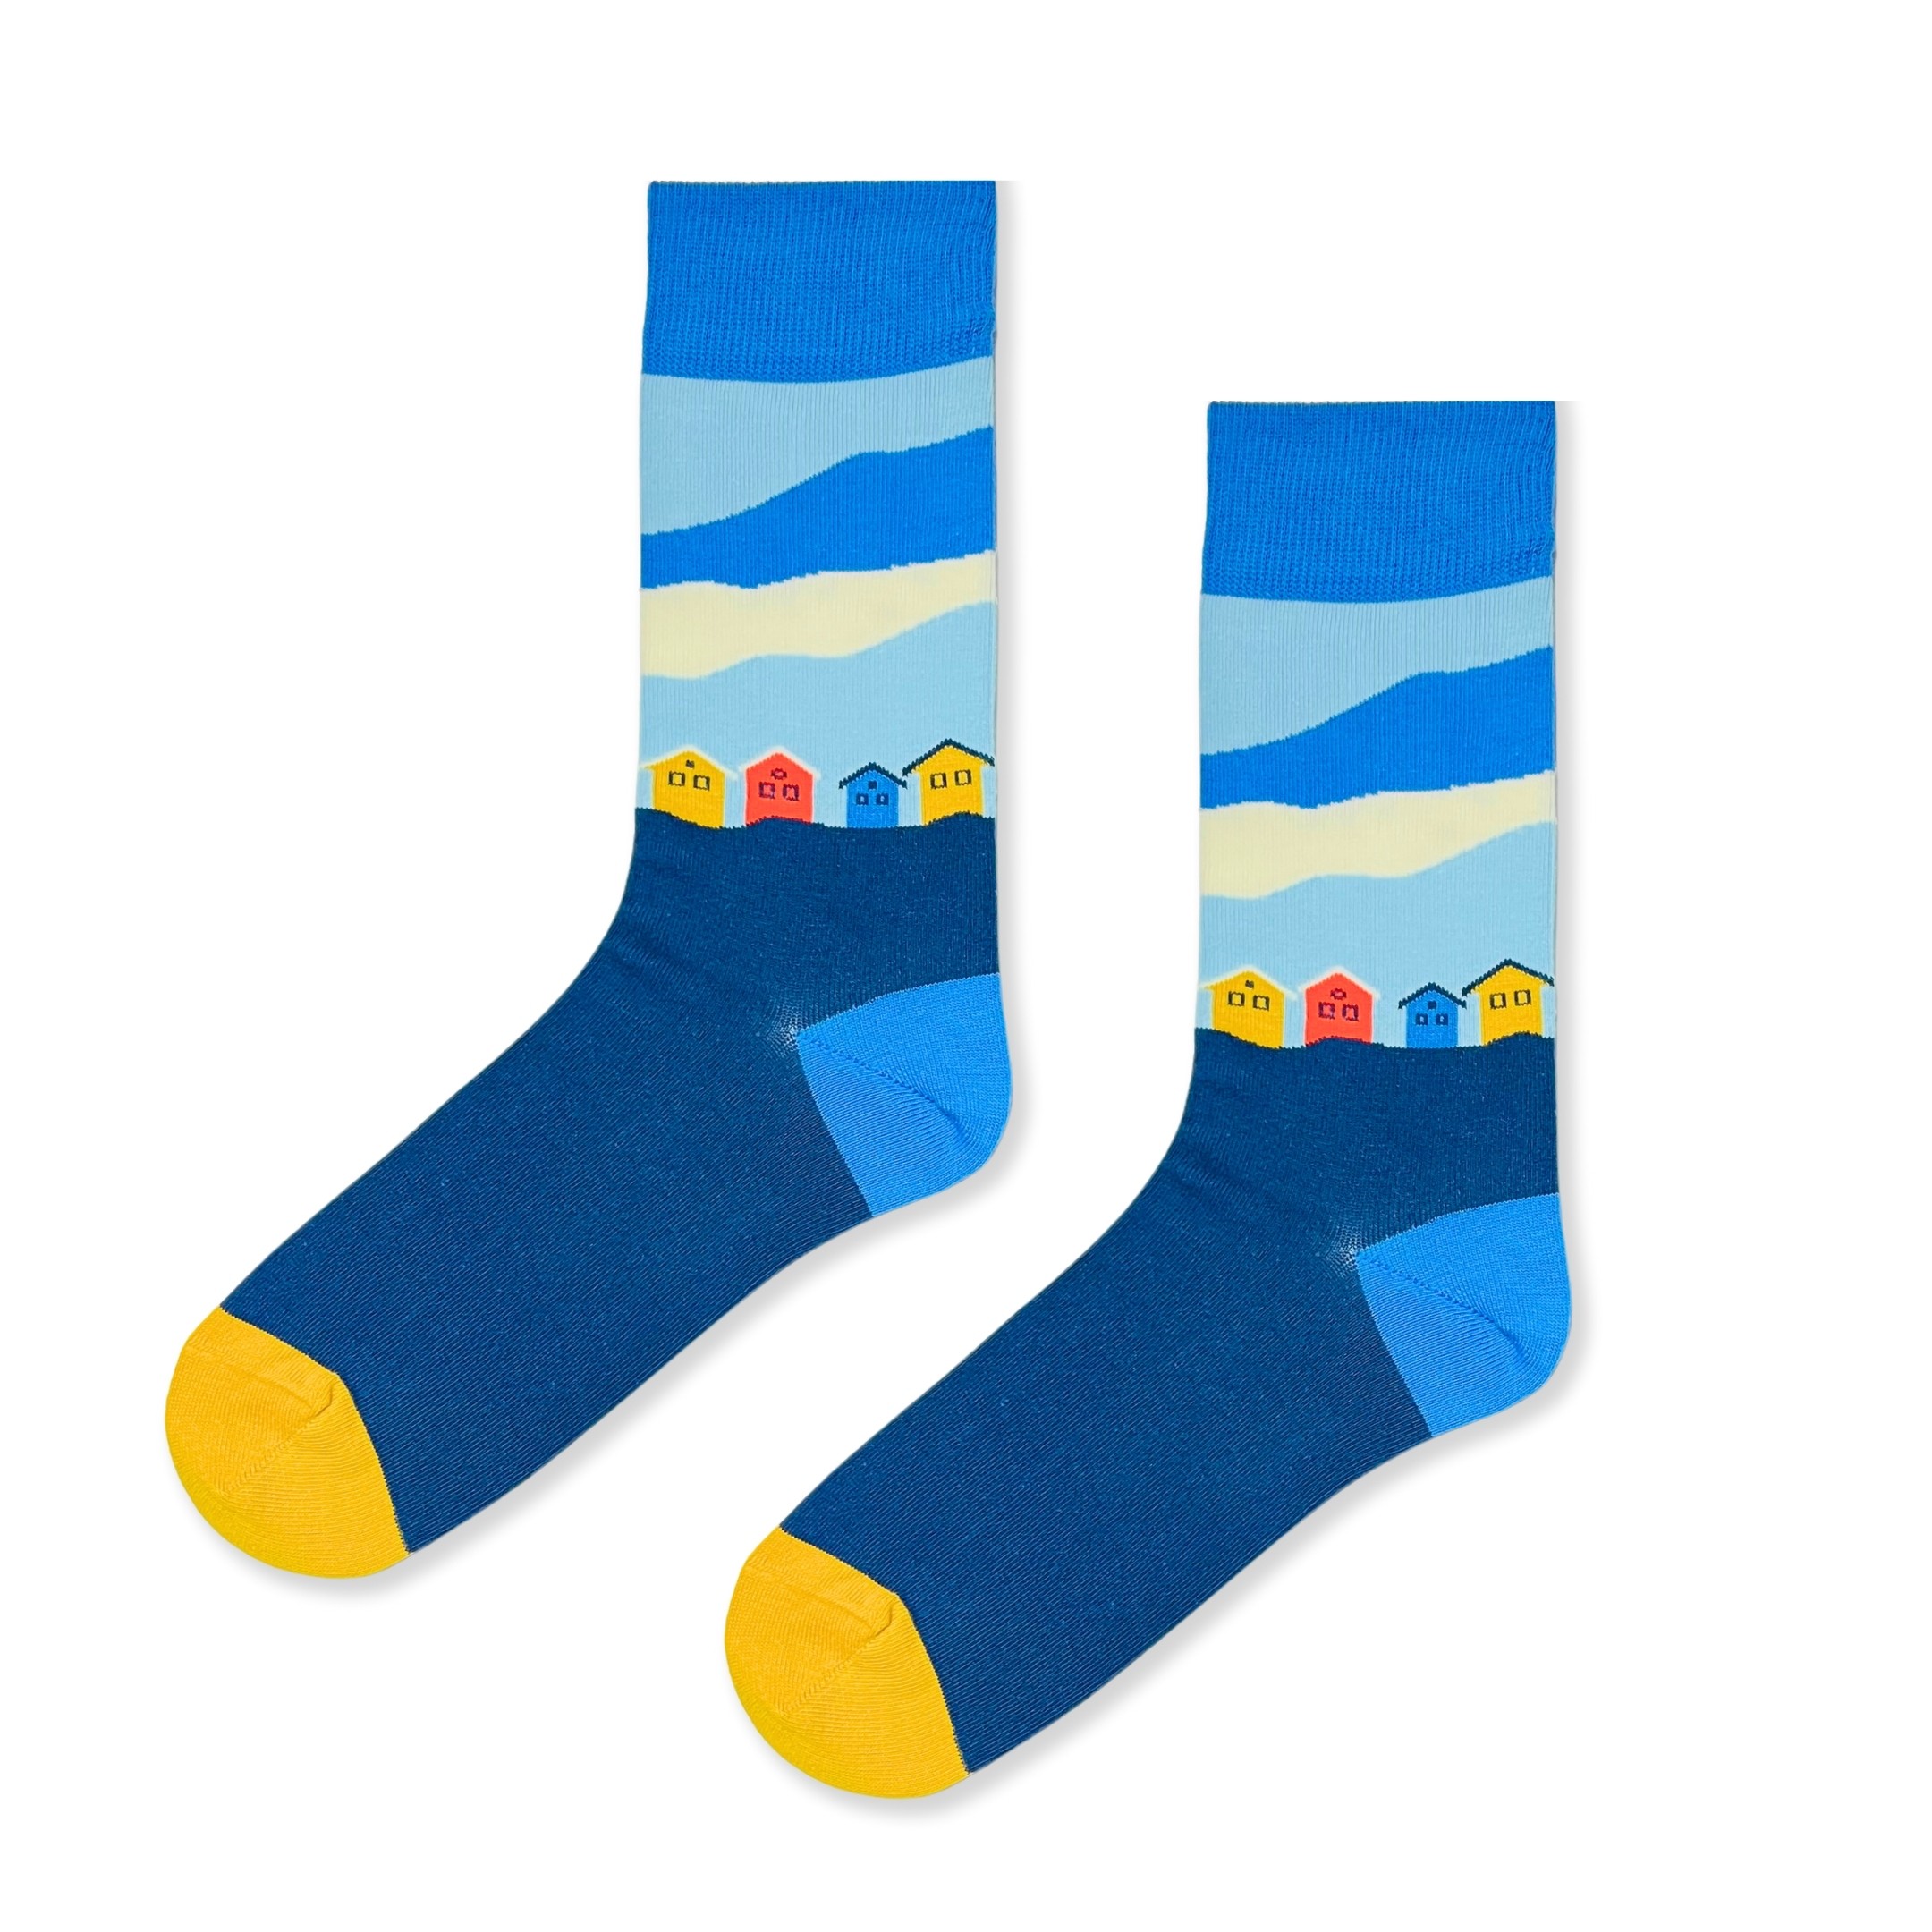  Ev Desenli Şekilli Renkli Erkek Soket Çorap (42-47)